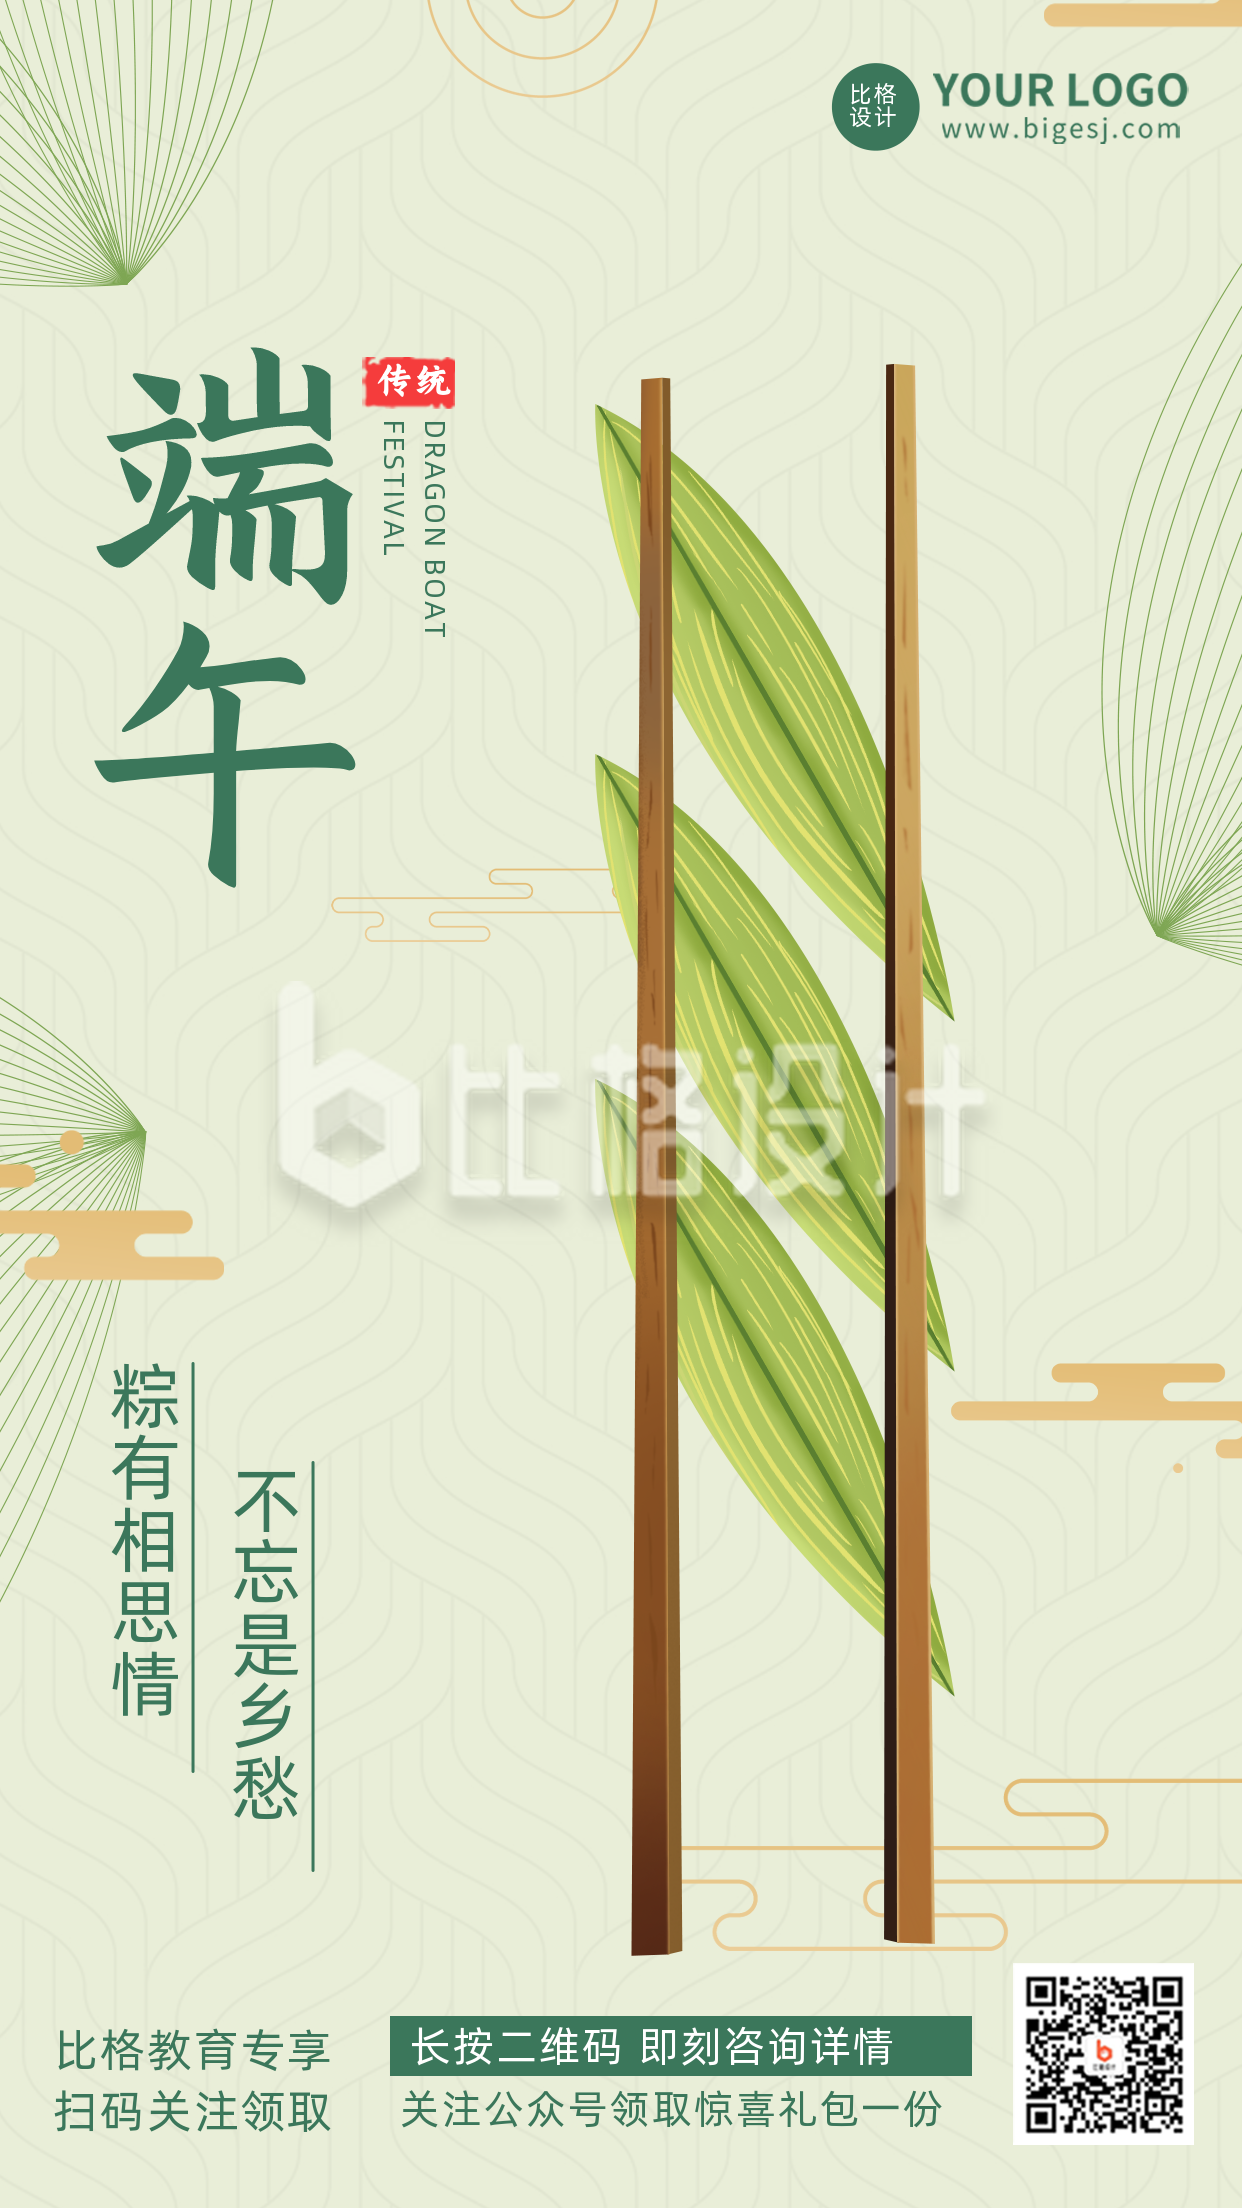 端午节习俗传统文化手绘筷子文案手绘手机海报